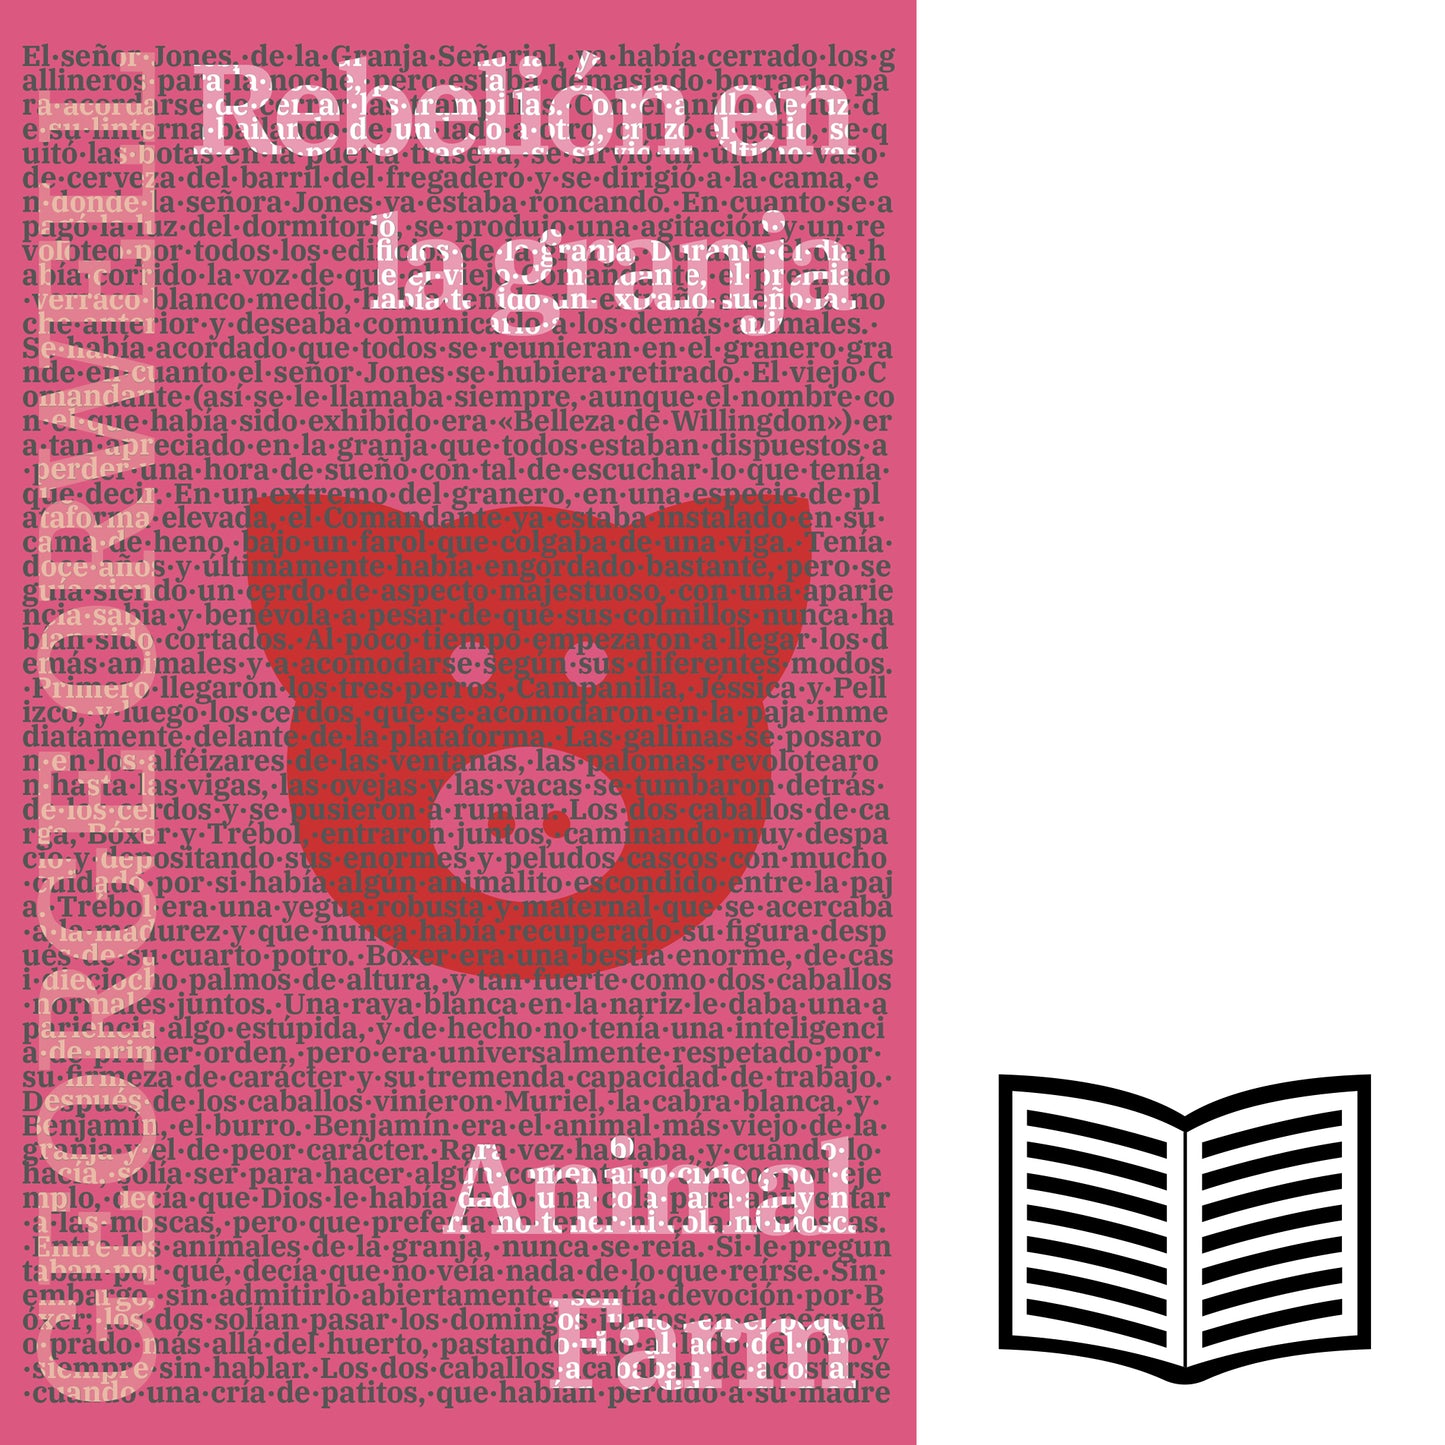 REBELION EN LA GRANJA (Spanish Edition)